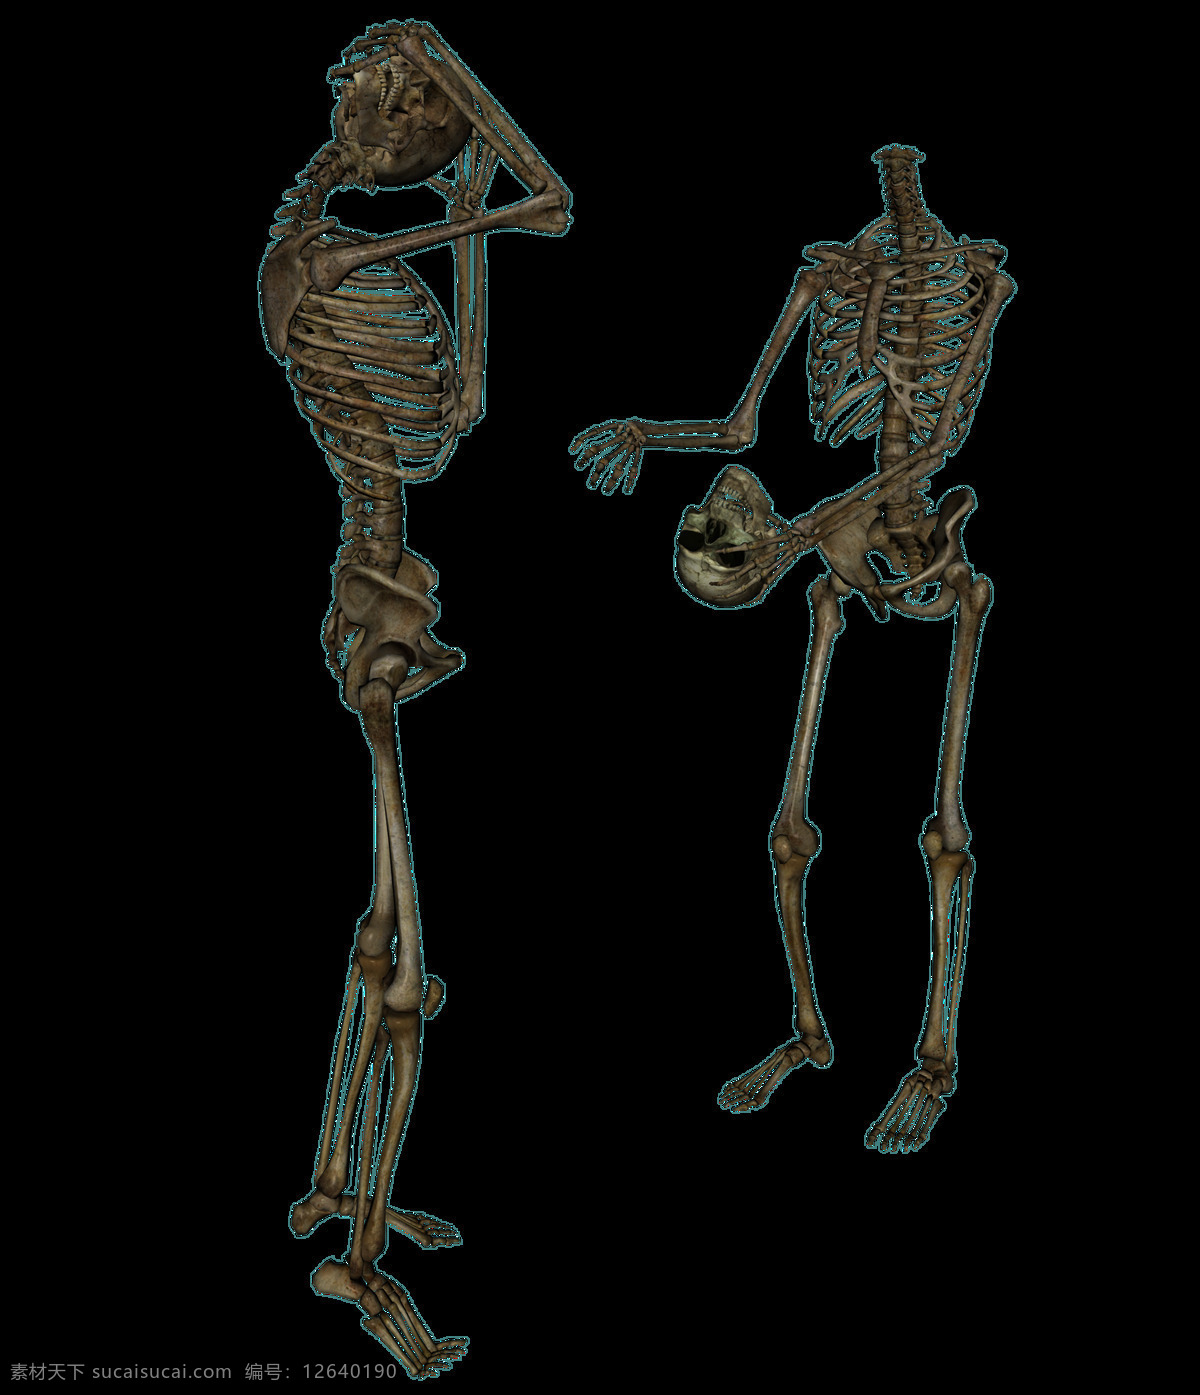 人体 形态 骨架 免 抠 透明 图 层 人体骨架子 人体骨架腿 人体骨架线图 人体骨架图解 胁 骨 人体骨架画 人体形态骨架 模型 图解